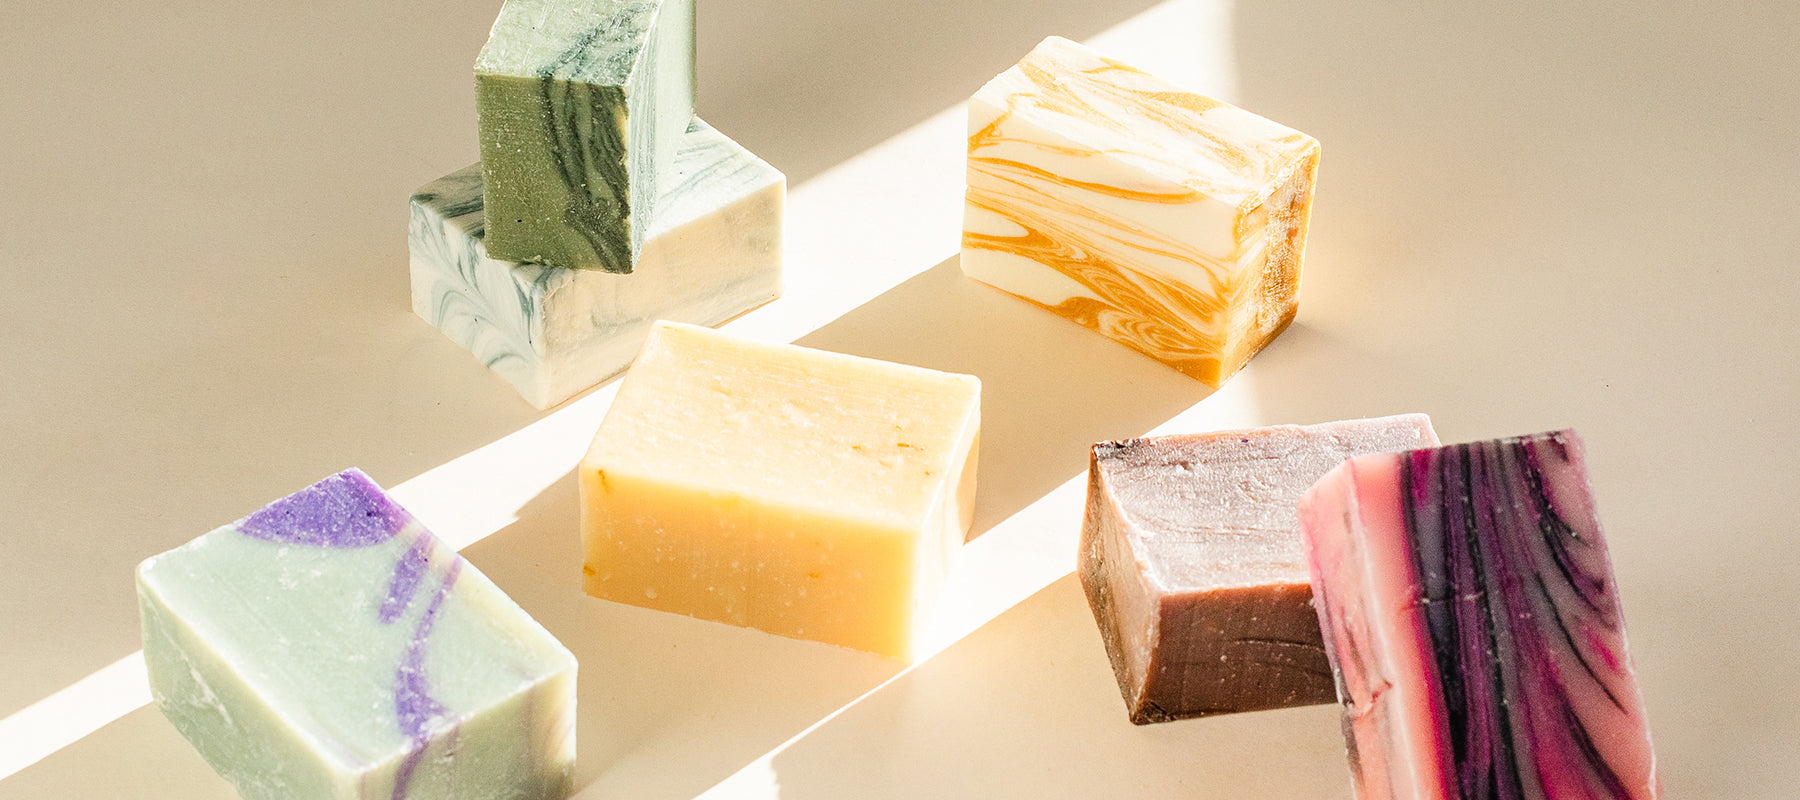 Image of natural bar soap